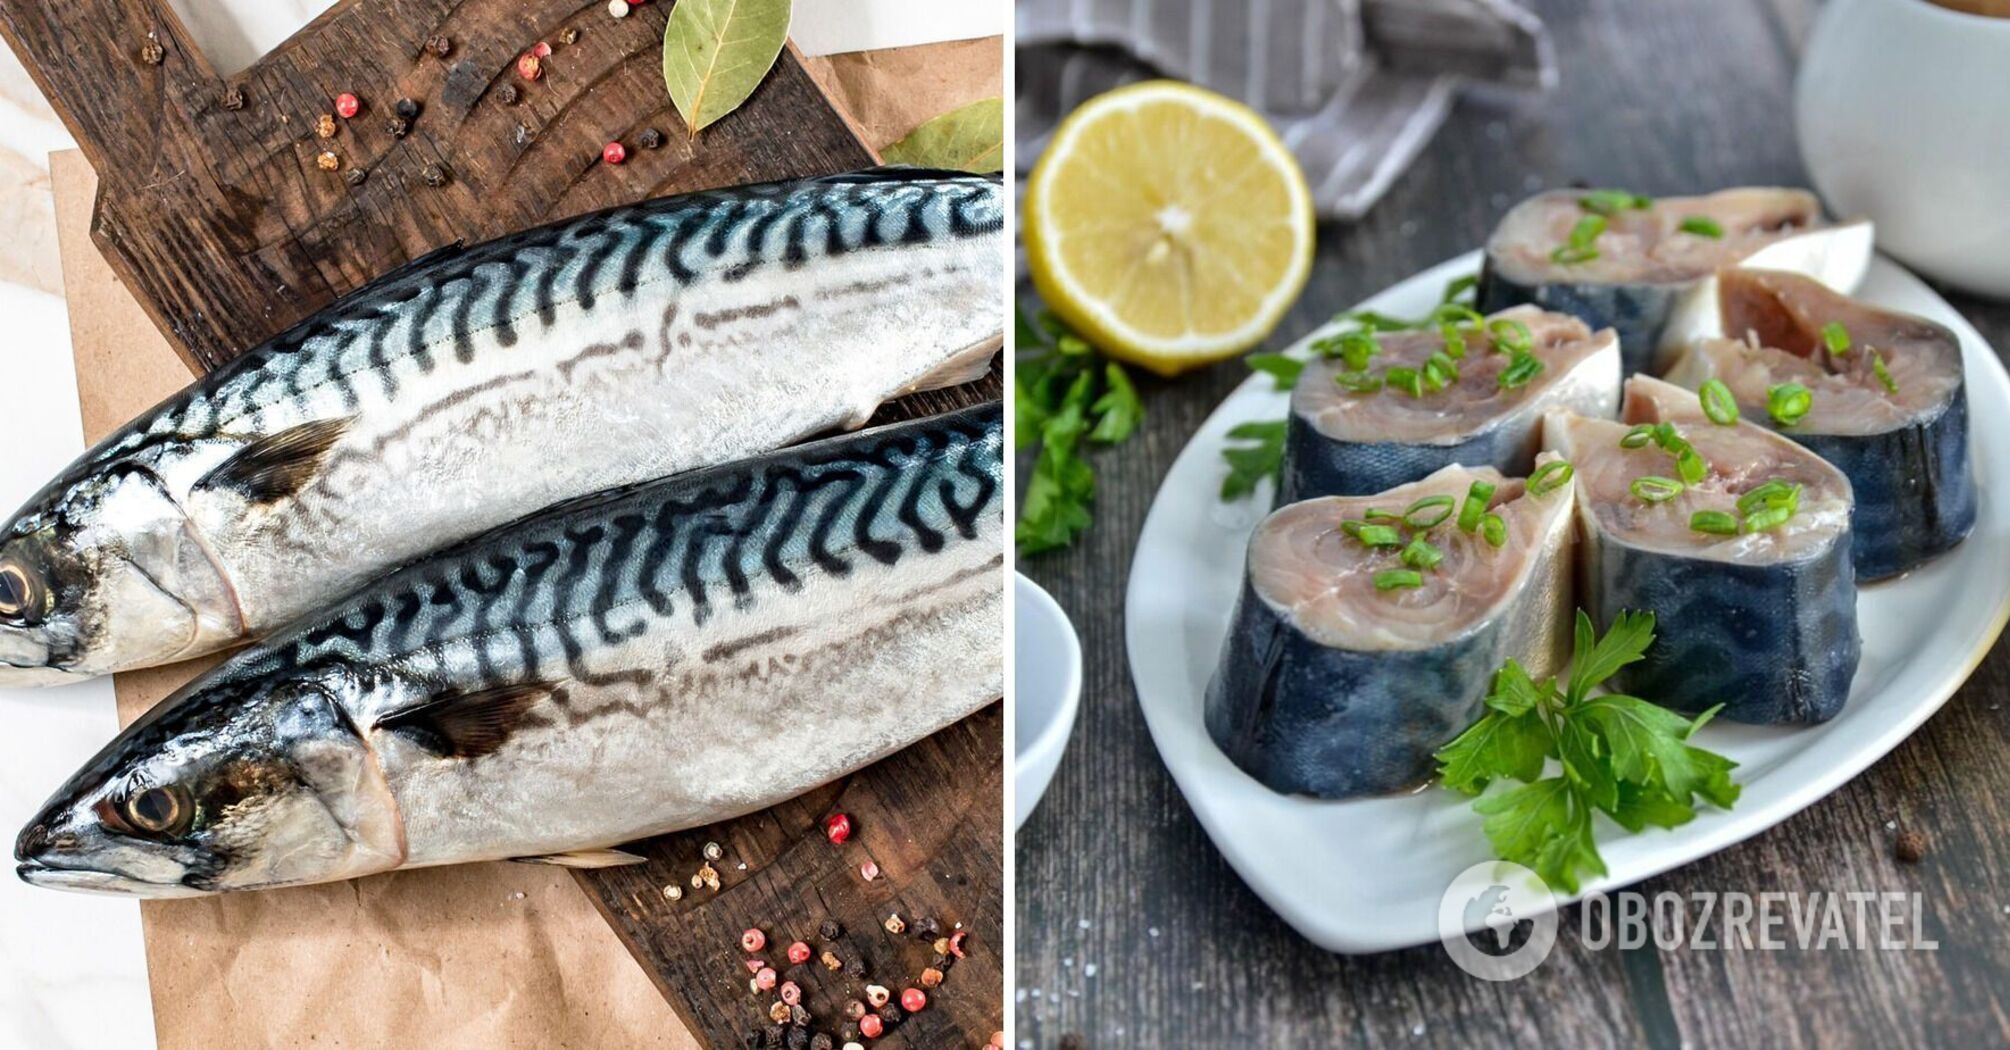 How to make a delicious mackerel marinade